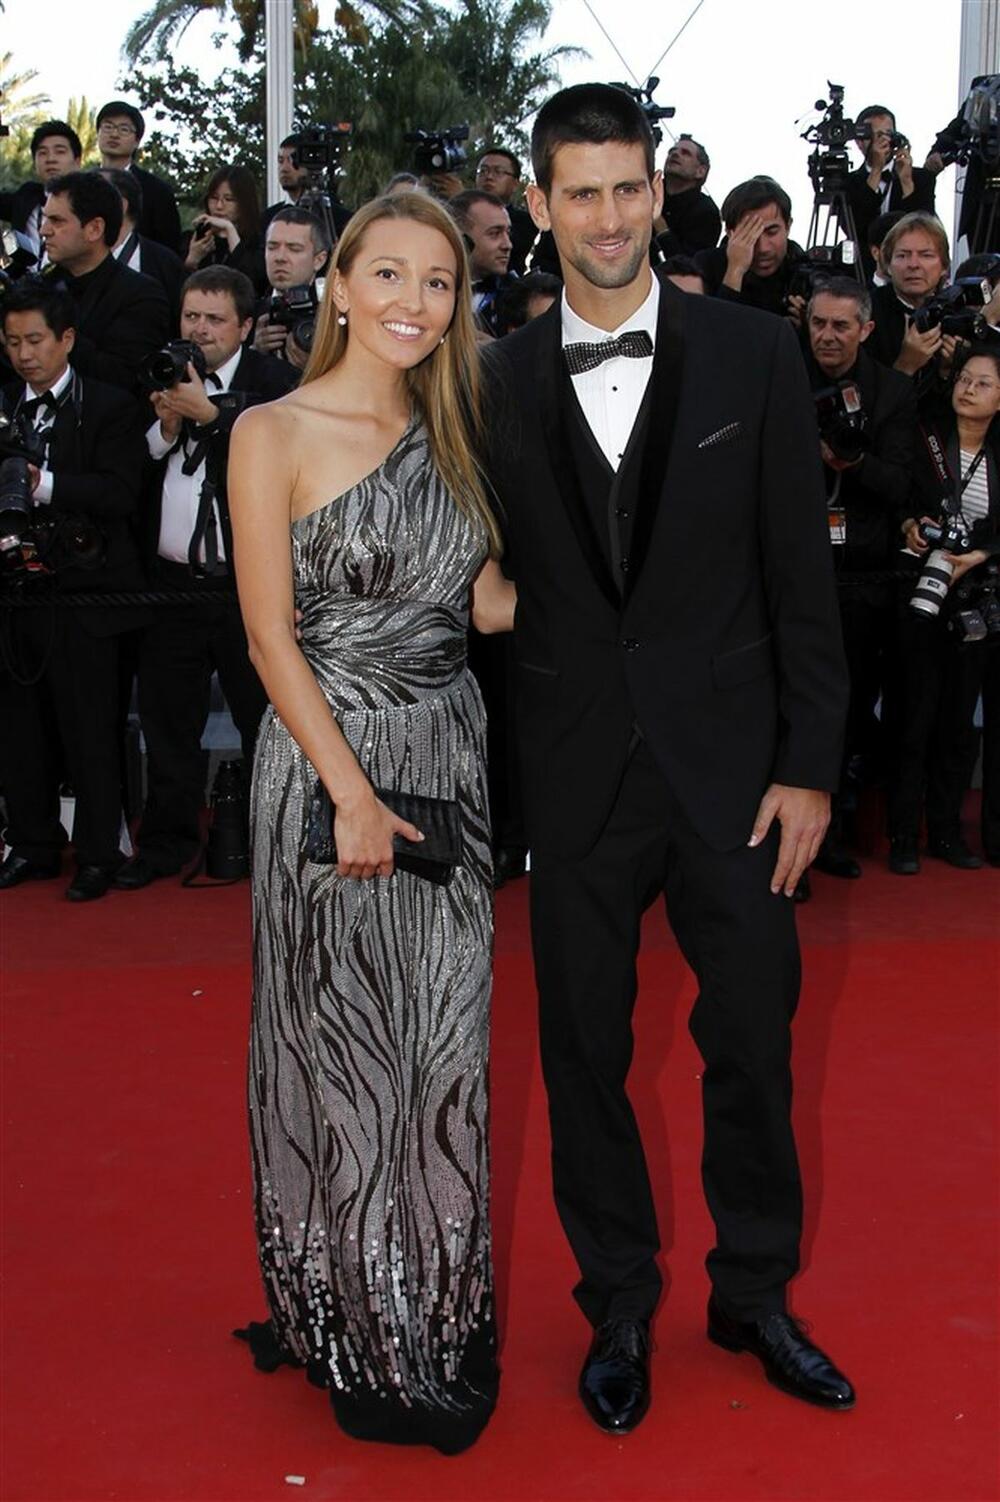 Jelena, tada Ristić, i Novak Đoković na Kanskom festivalu 2012. godine, na premijeri filma "Ubij ih nežno" režisera Endrua Dominika, s Bredom Pitom u glavnoj ulozi